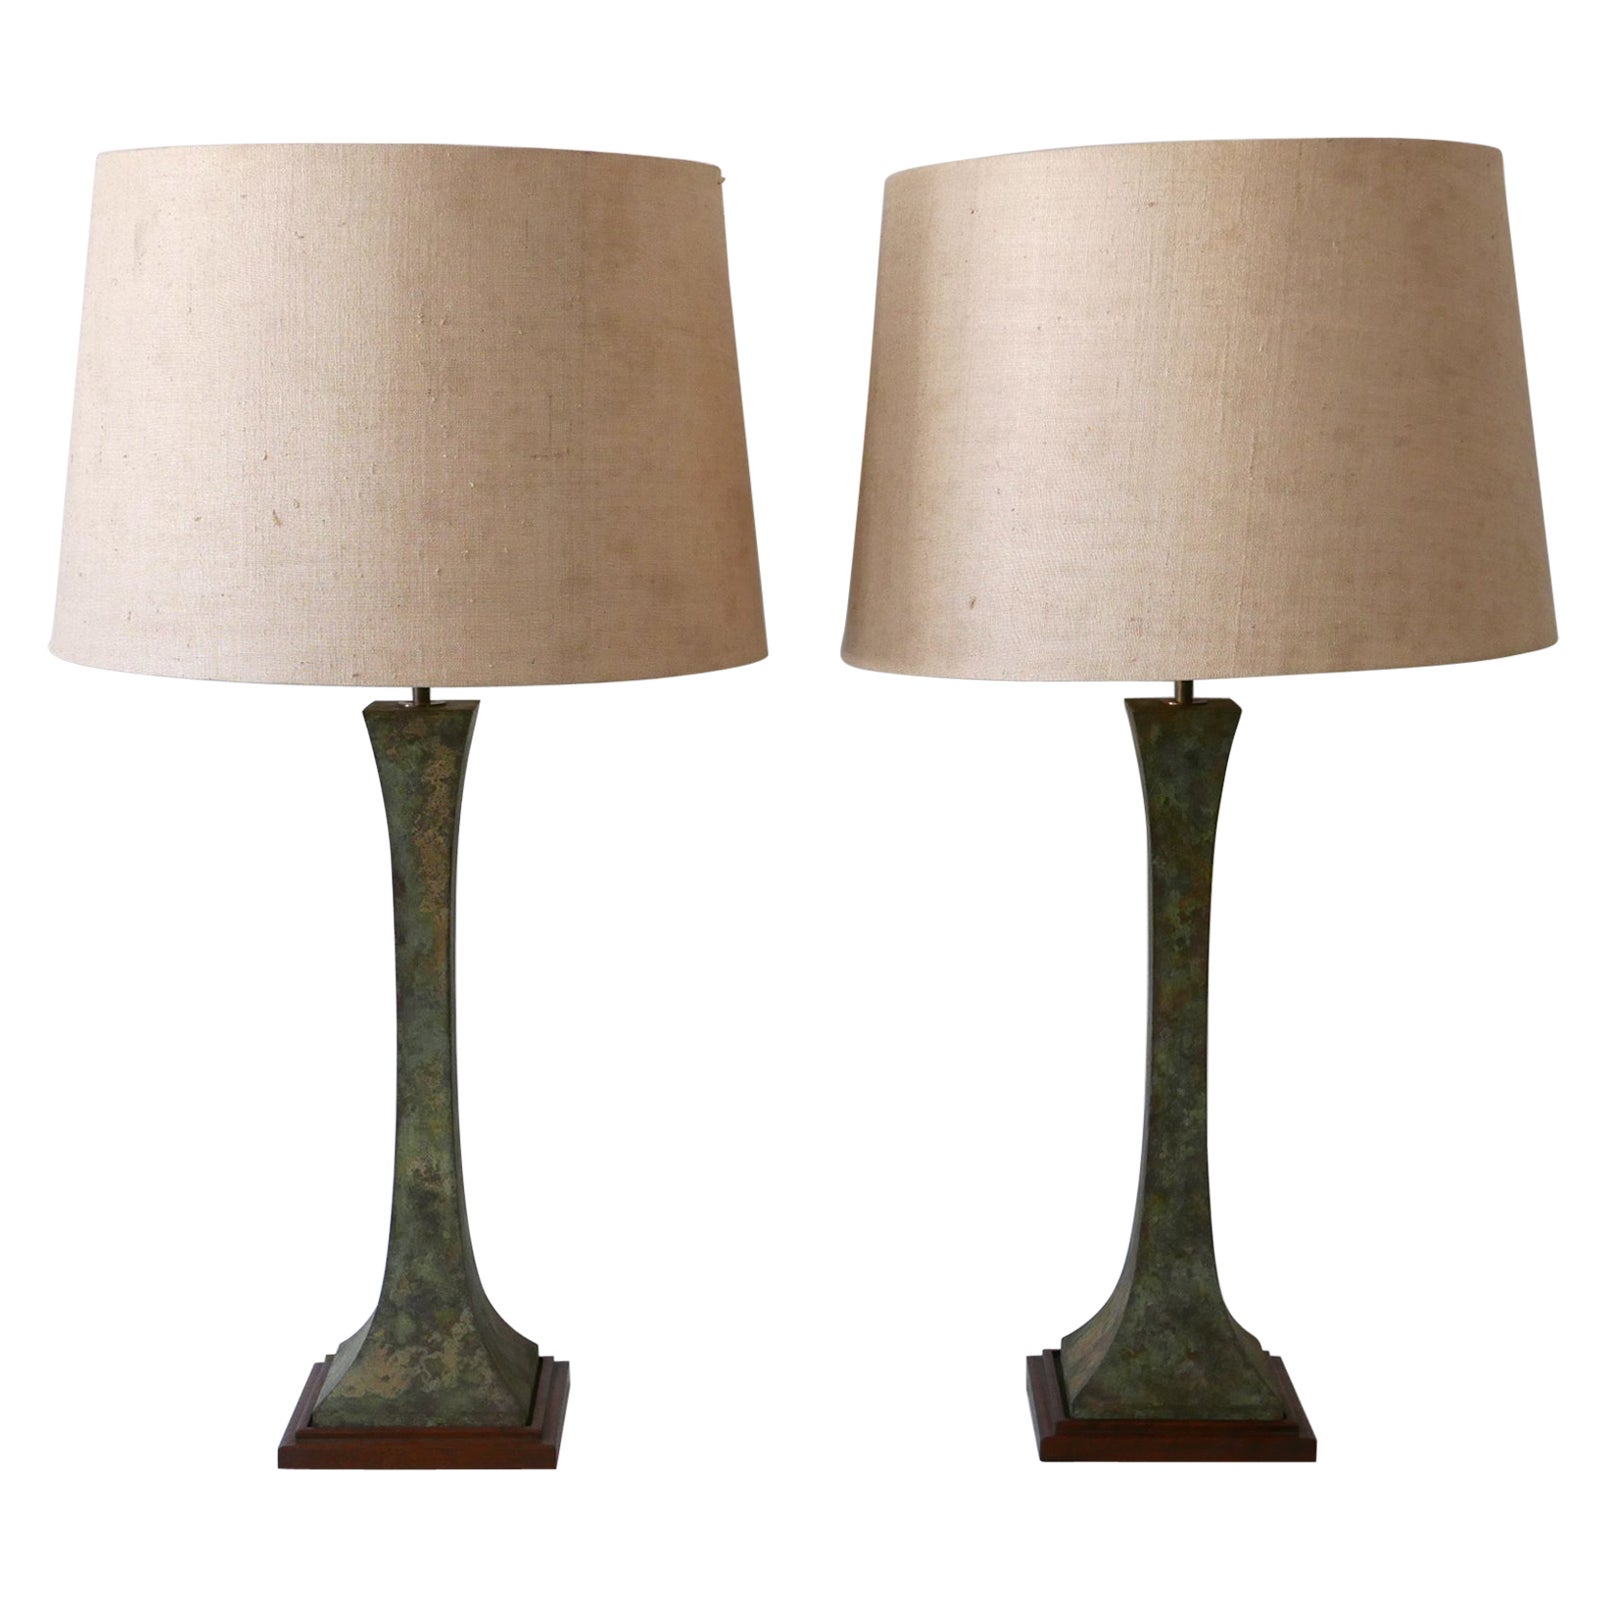 Set of Two Verdigris Table Lamps by Stewart Ross James for Hansen Lighting 1960s